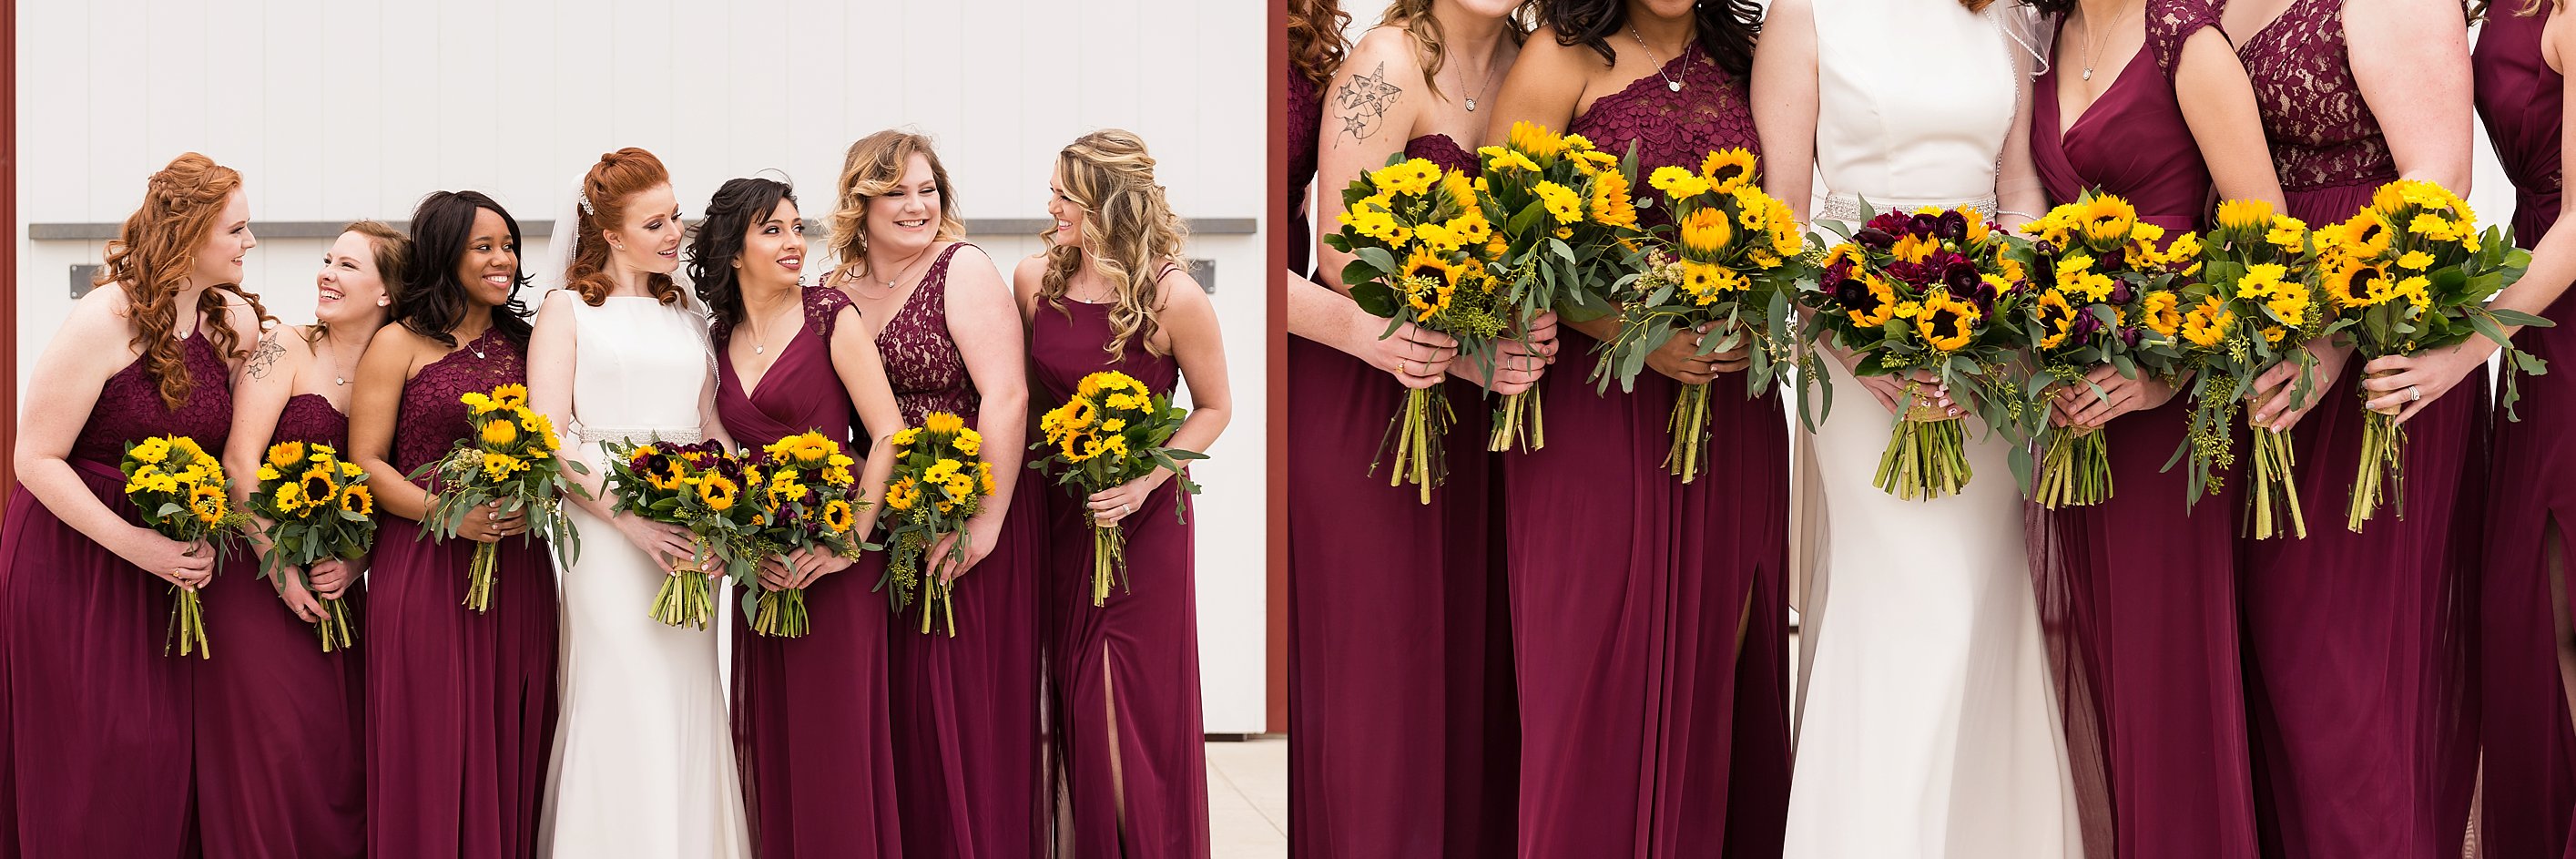 Bridesmaids Photos. Wedding-Party-Photos-The-Barn-at-Kill-Creek-Wedding-Photos-De-Soto-KS-Emily-Lynn-Photography